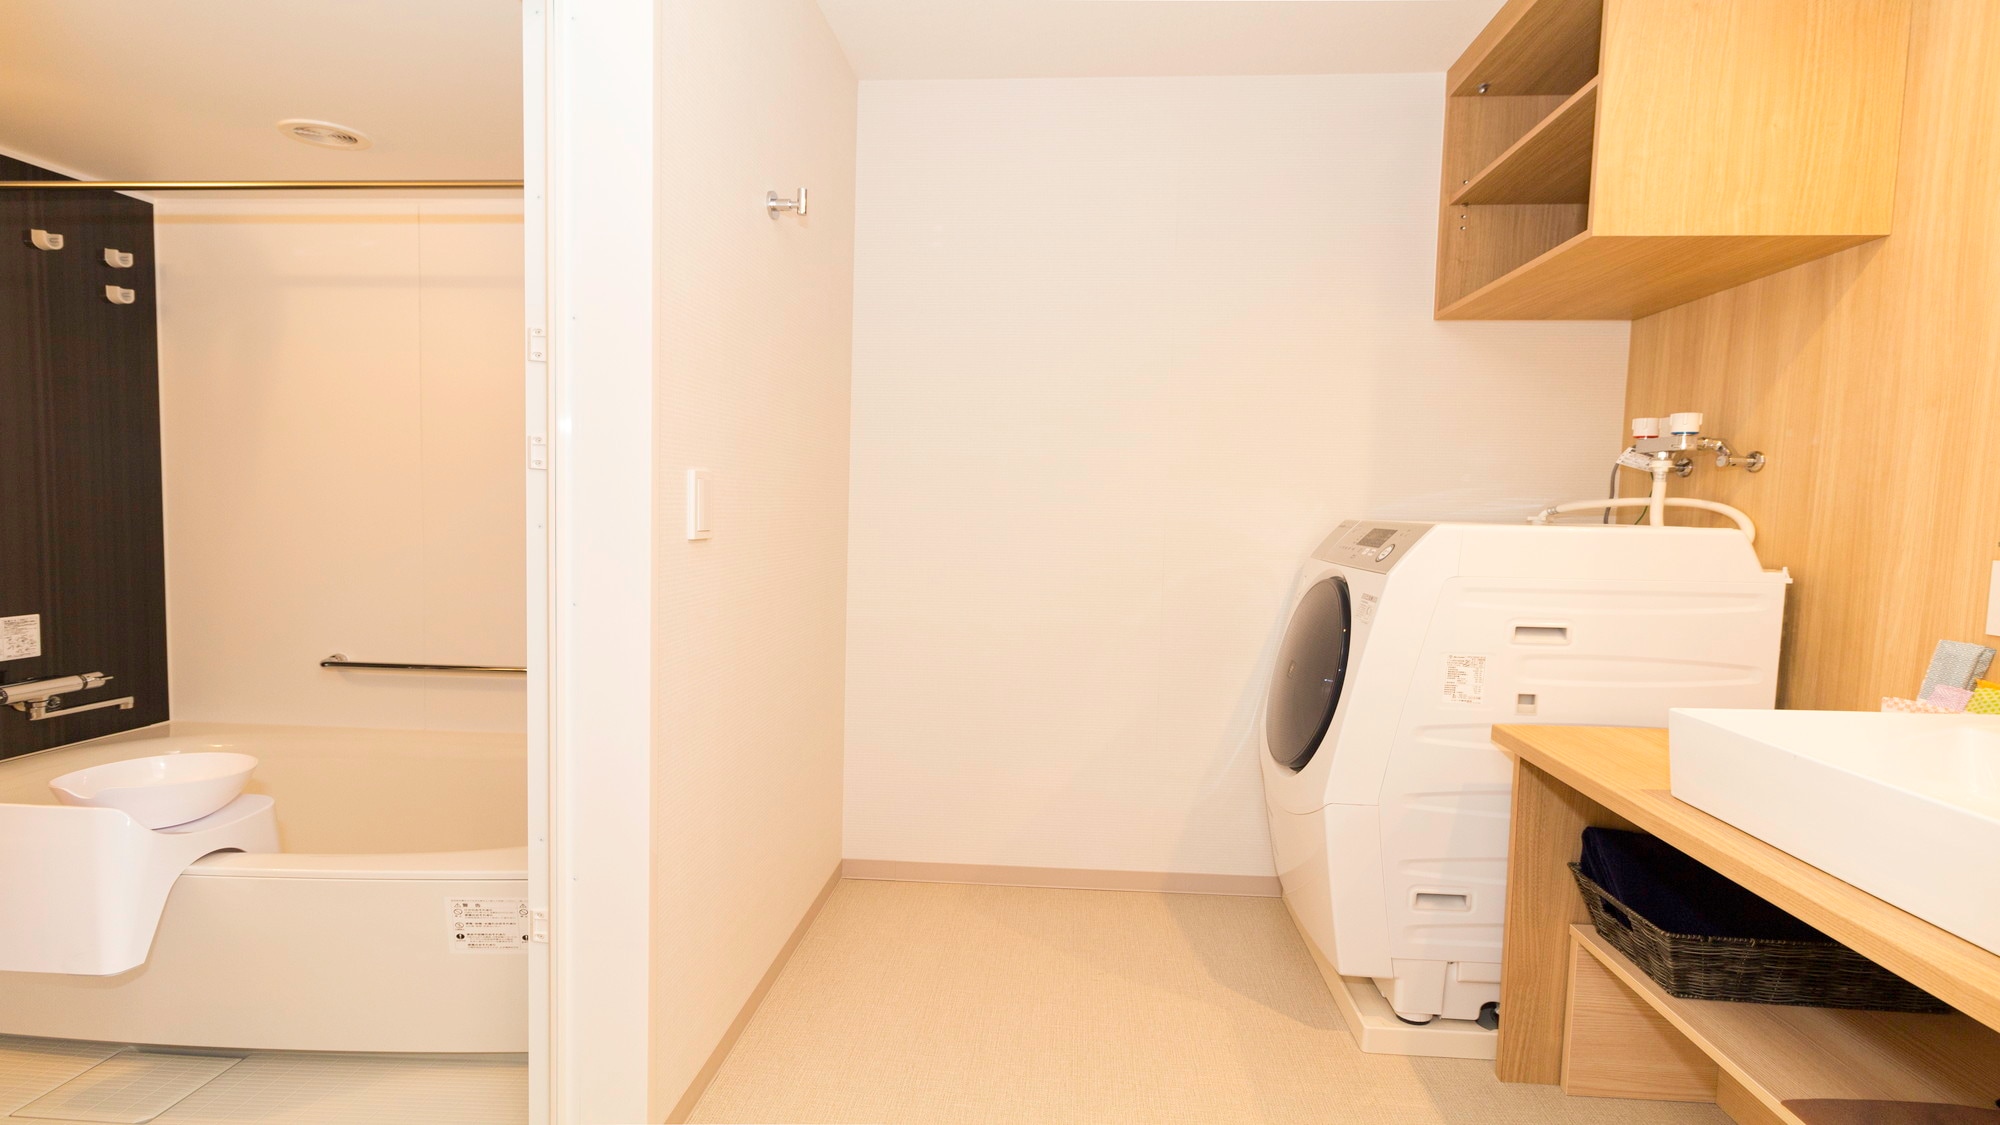 Ruang hunian dilengkapi dengan dapur, lemari dan peralatan rumah tangga (mesin cuci, kulkas, penyedot debu, dll.)